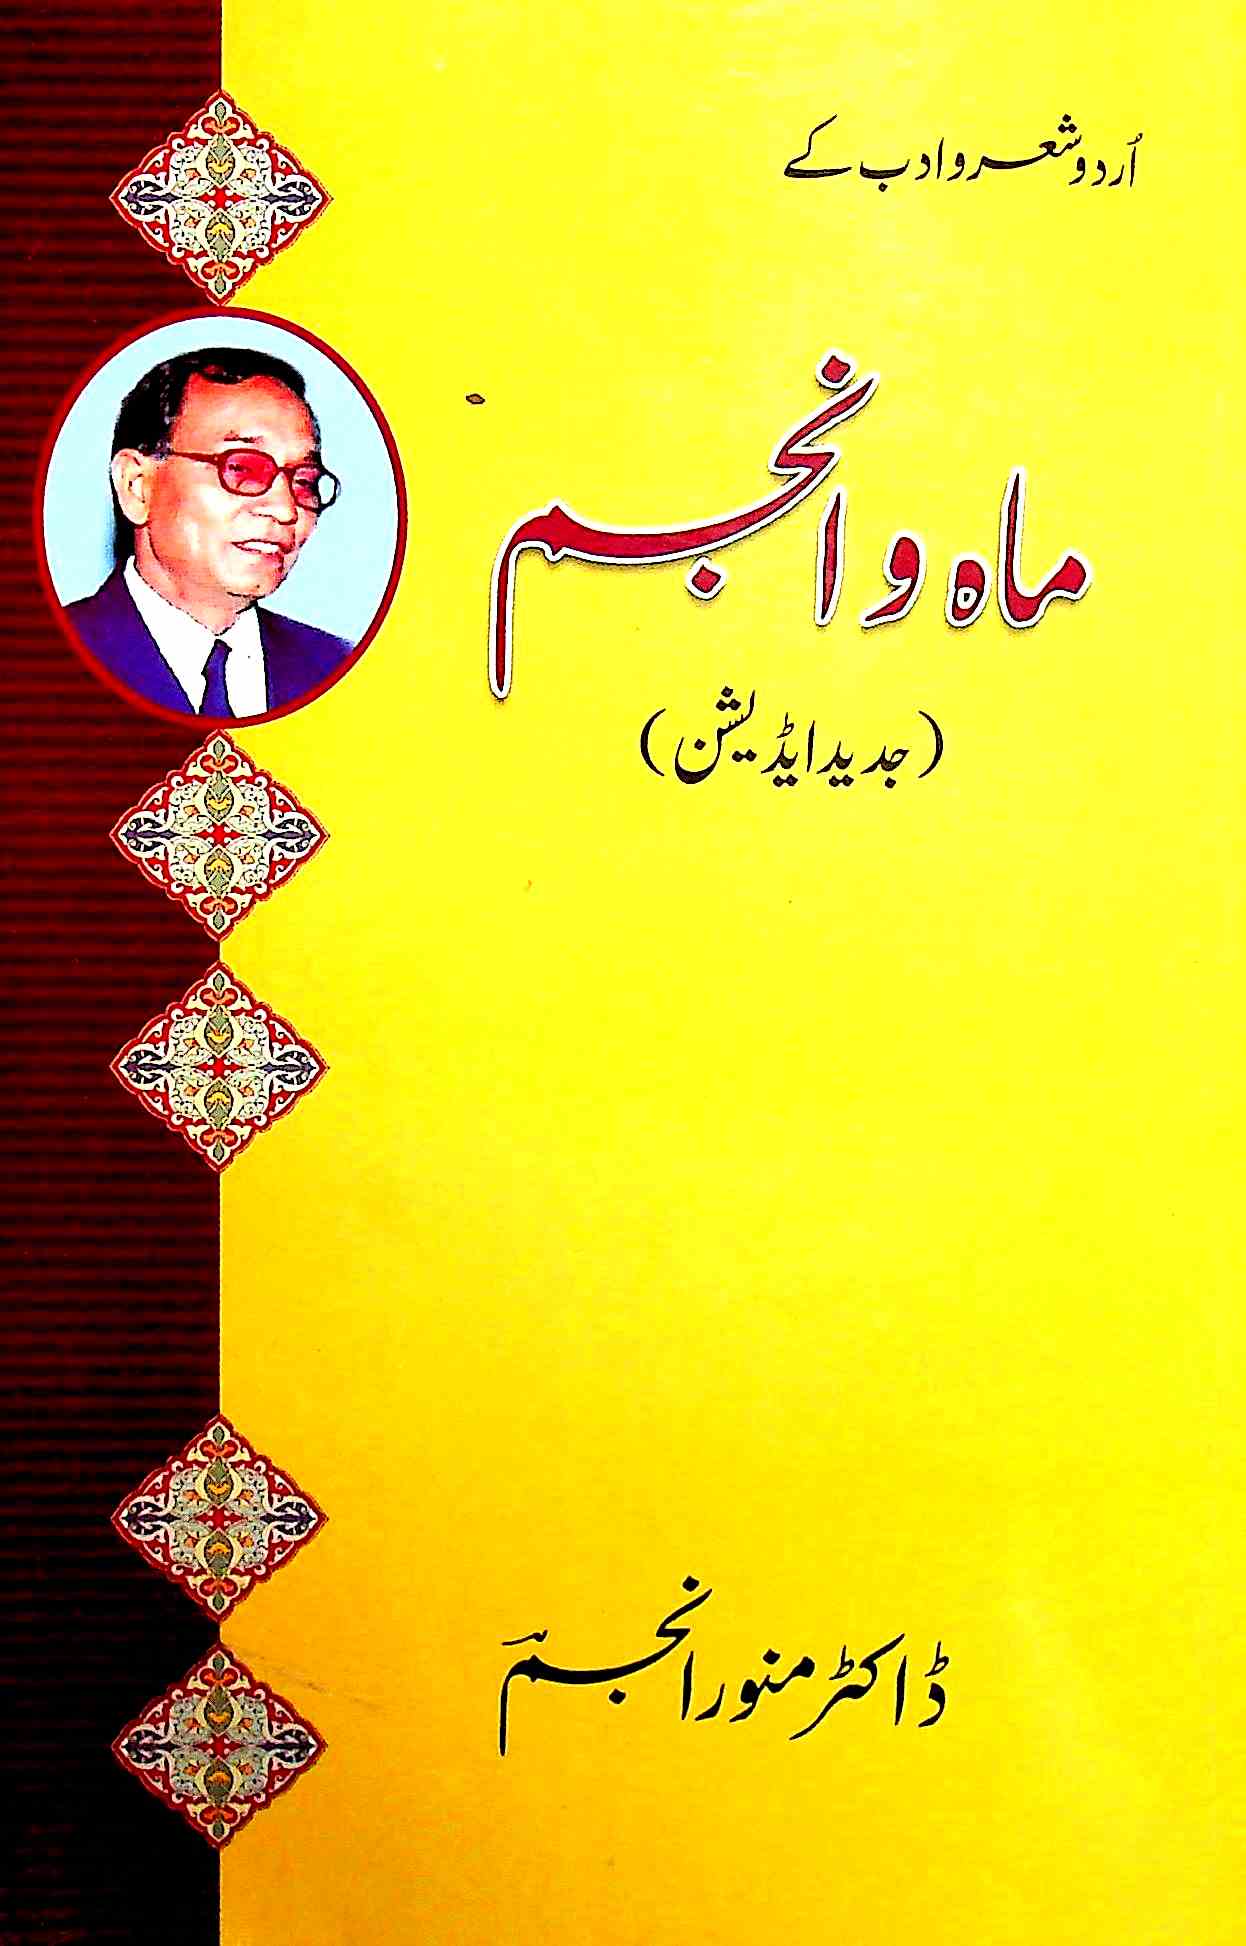 اردو شعر و ادب کے ماہ و انجم